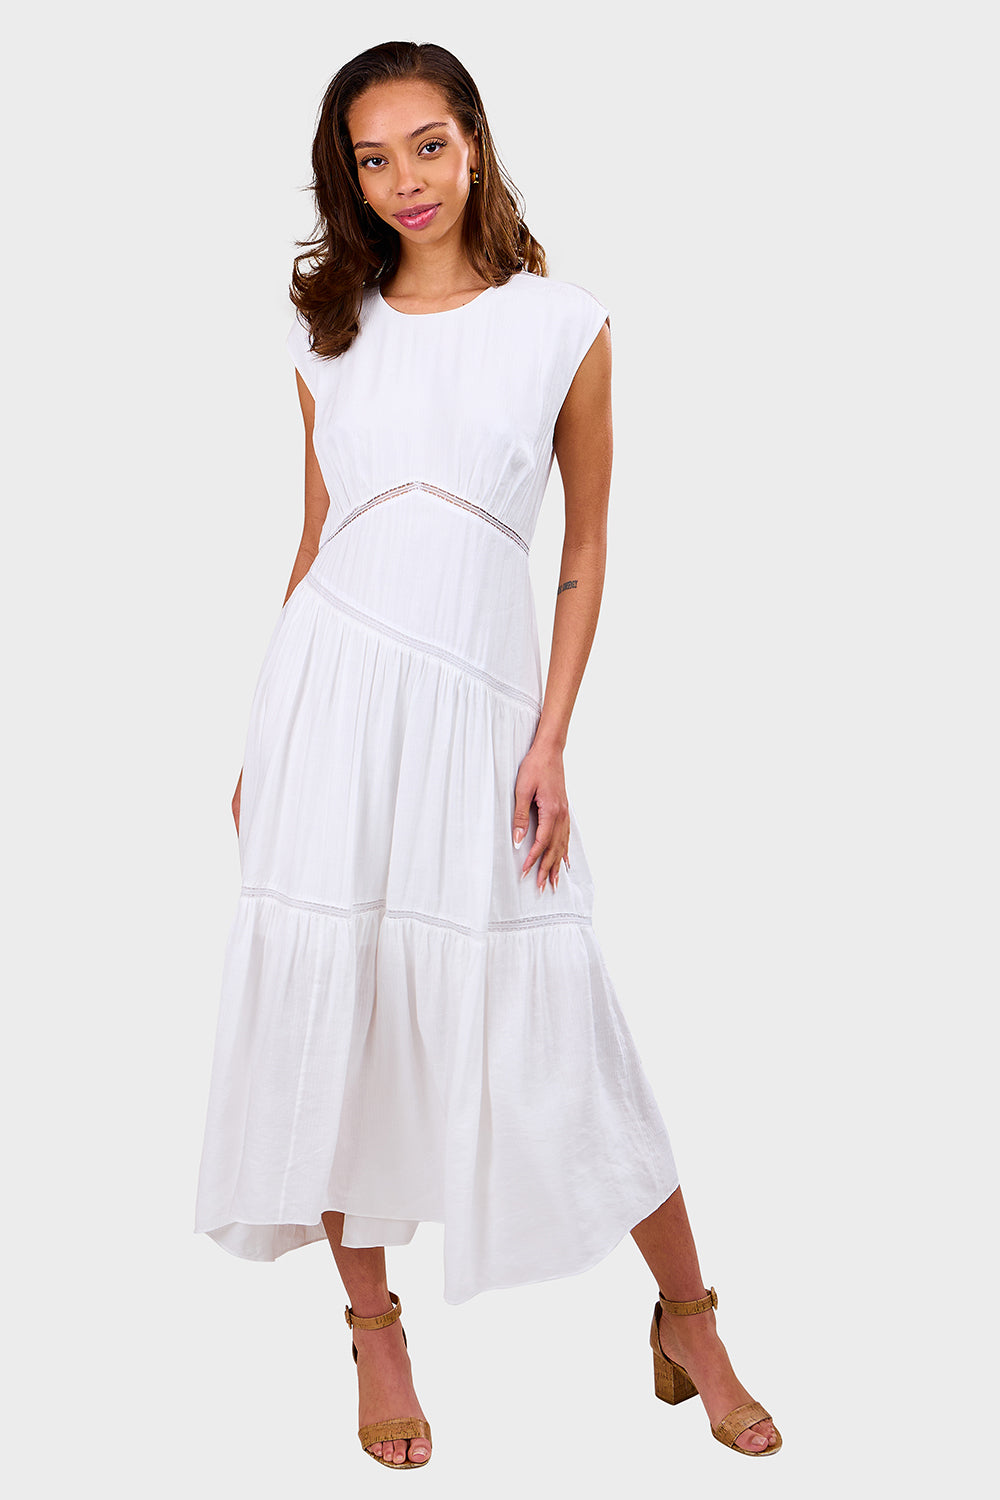 Gathered Seam Lace Inset Dress - White